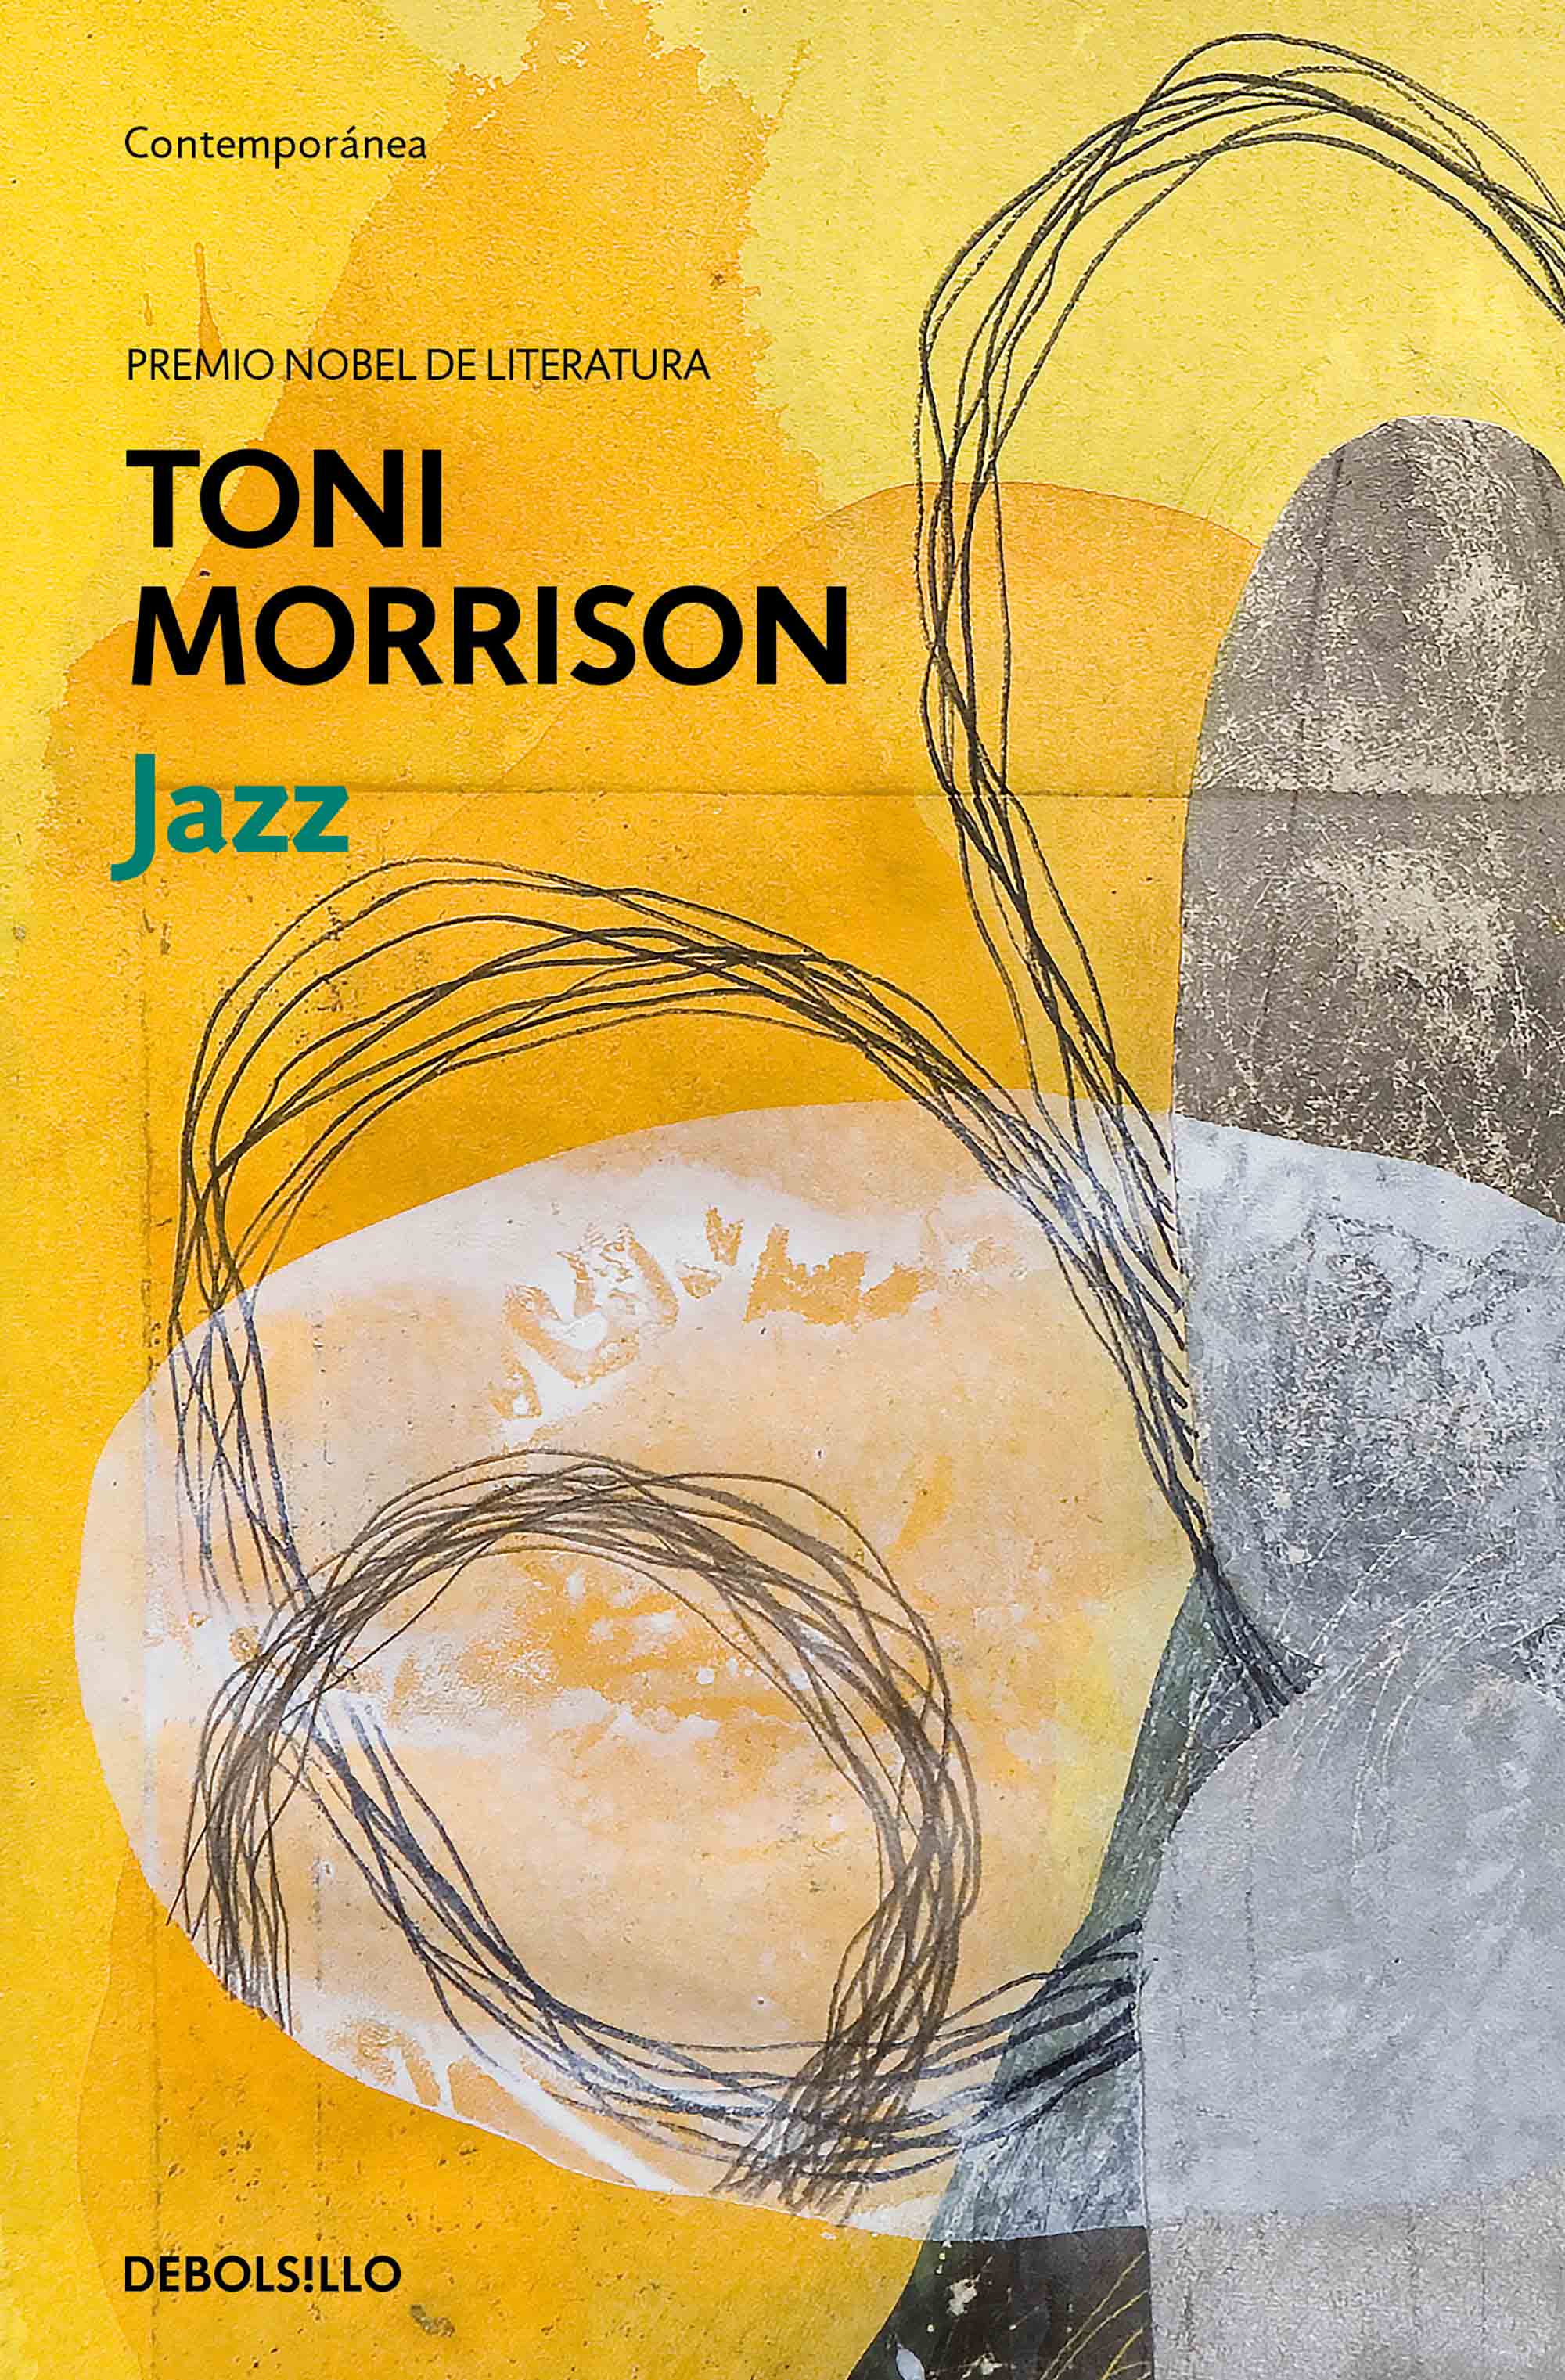 "Jazz". Toni Morrison. Debolsillo Contemporánea.